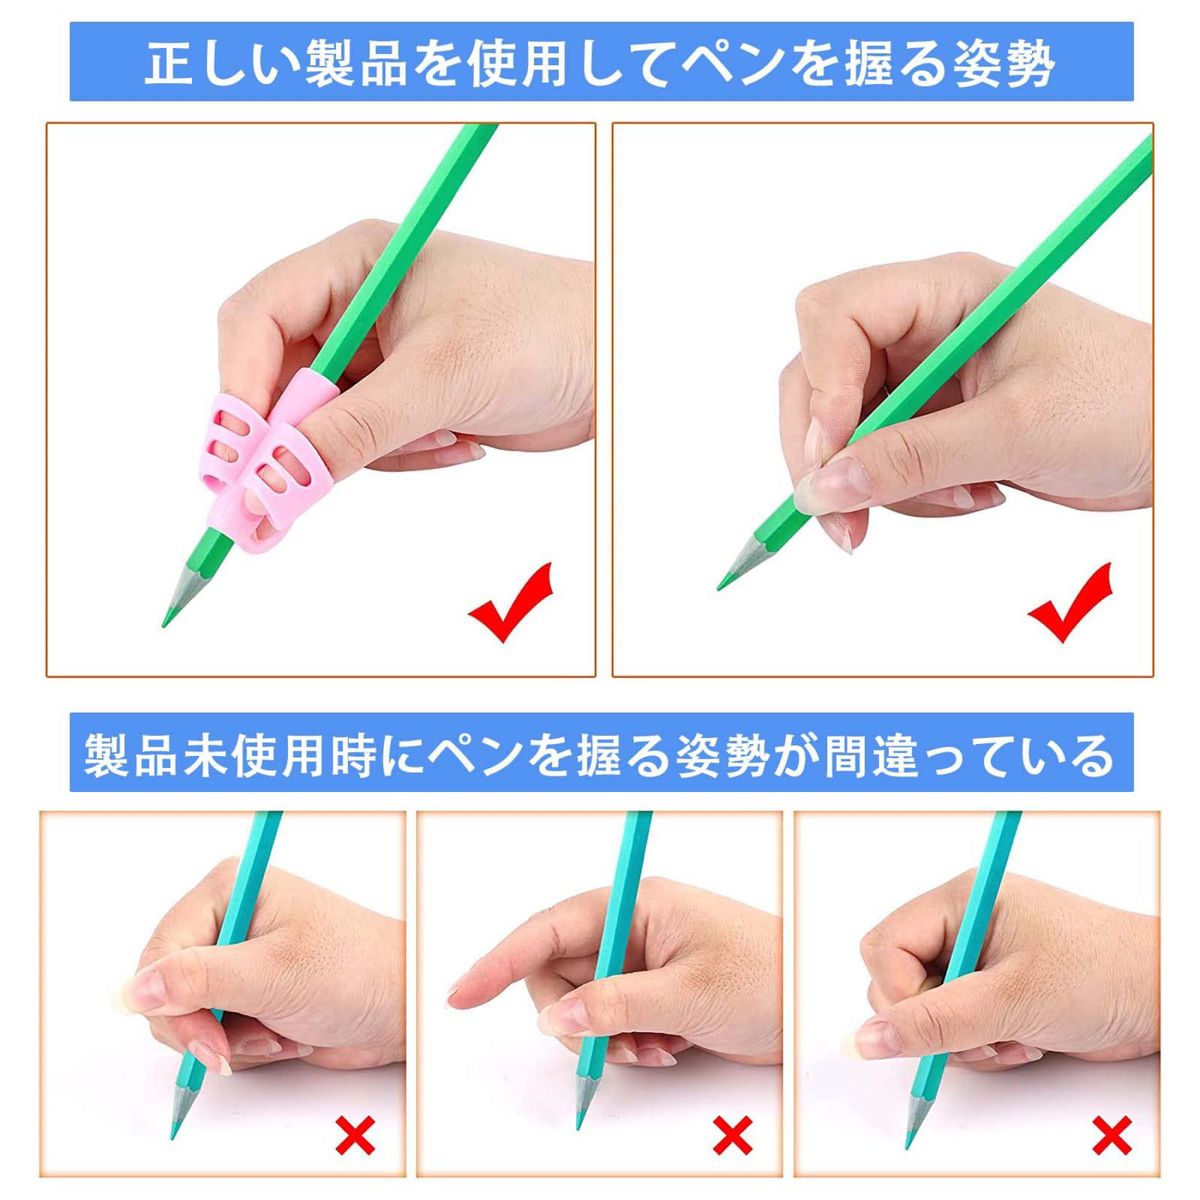 鉛筆持ち方 矯正 鉛筆グリップ  握り方正しい持ち方 左右手兼用 5本指持ち